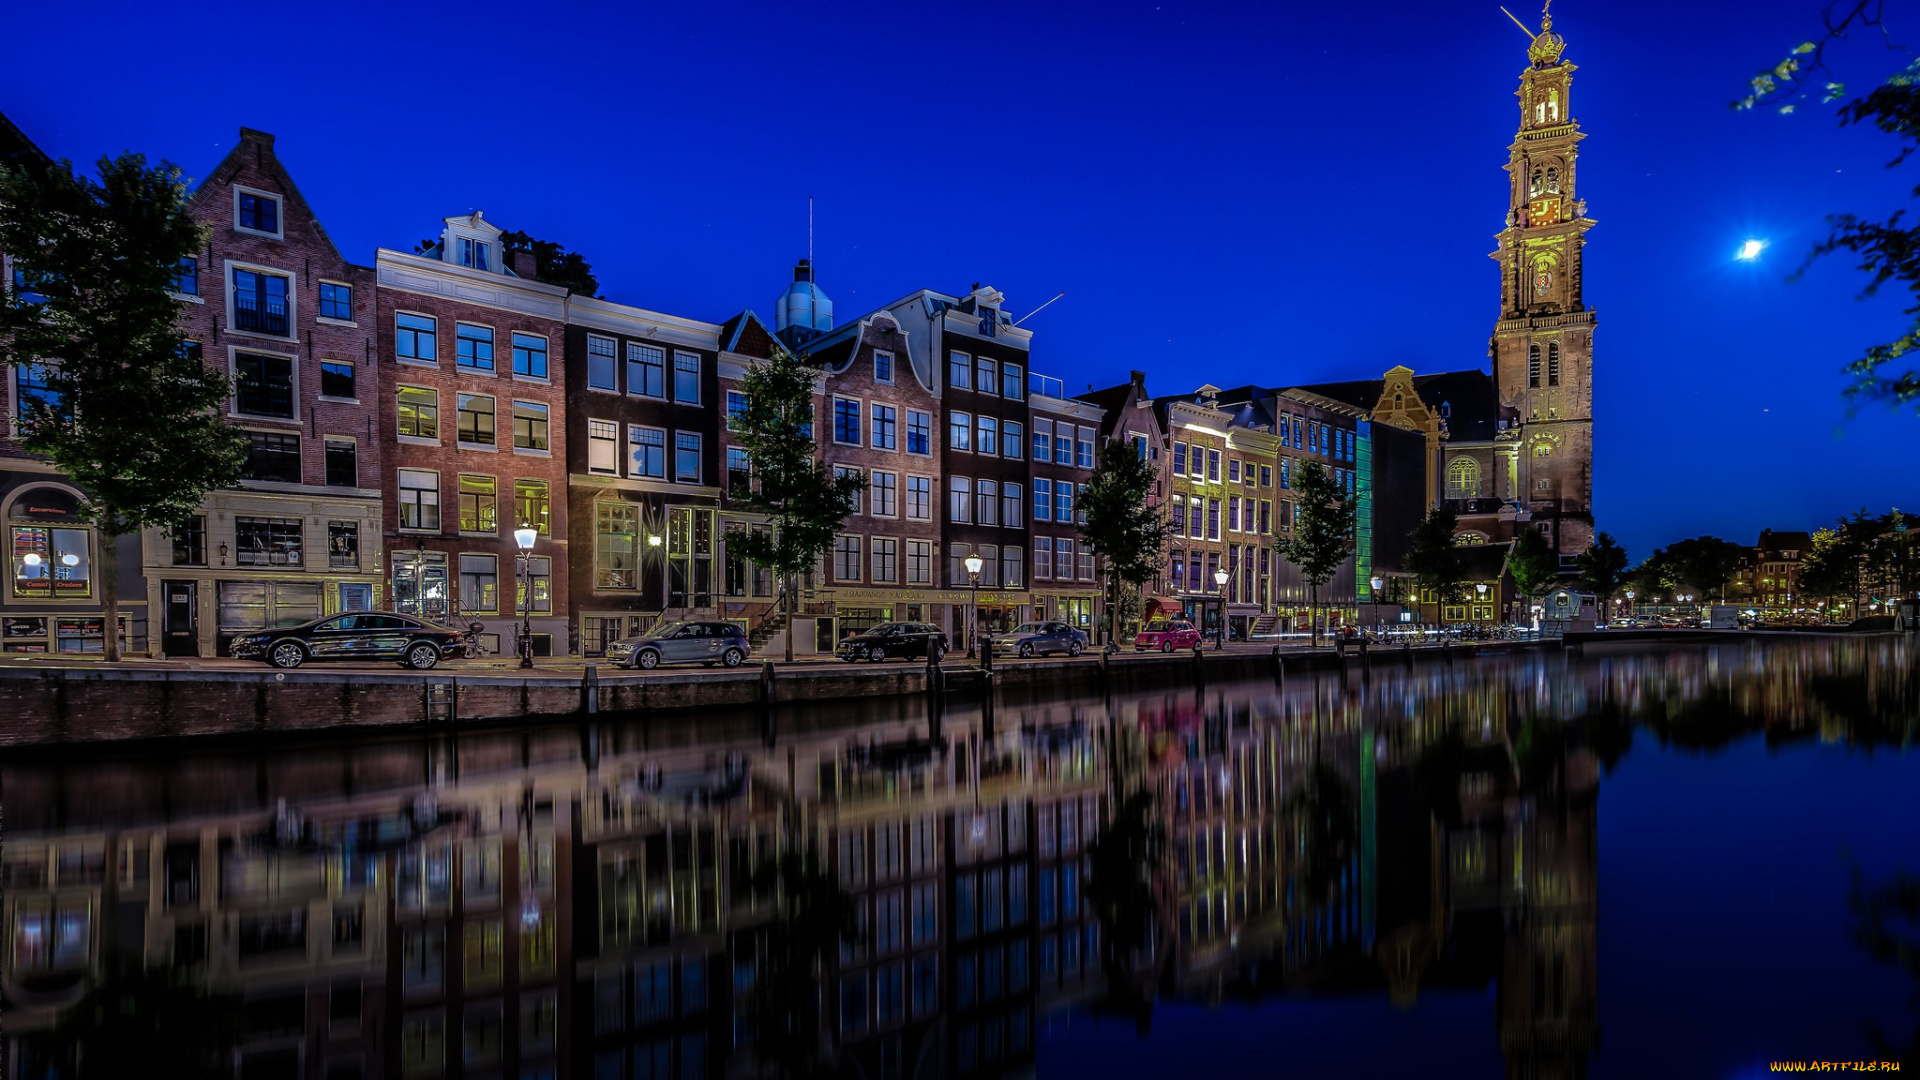 города, амстердам, , нидерланды, авто, машины, здания, amsterdam, netherlands, westerkerk, prinsengracht, канал, принсенграхт, амстердам, вестеркерк, ночной, город, набережная, отражение, церковь